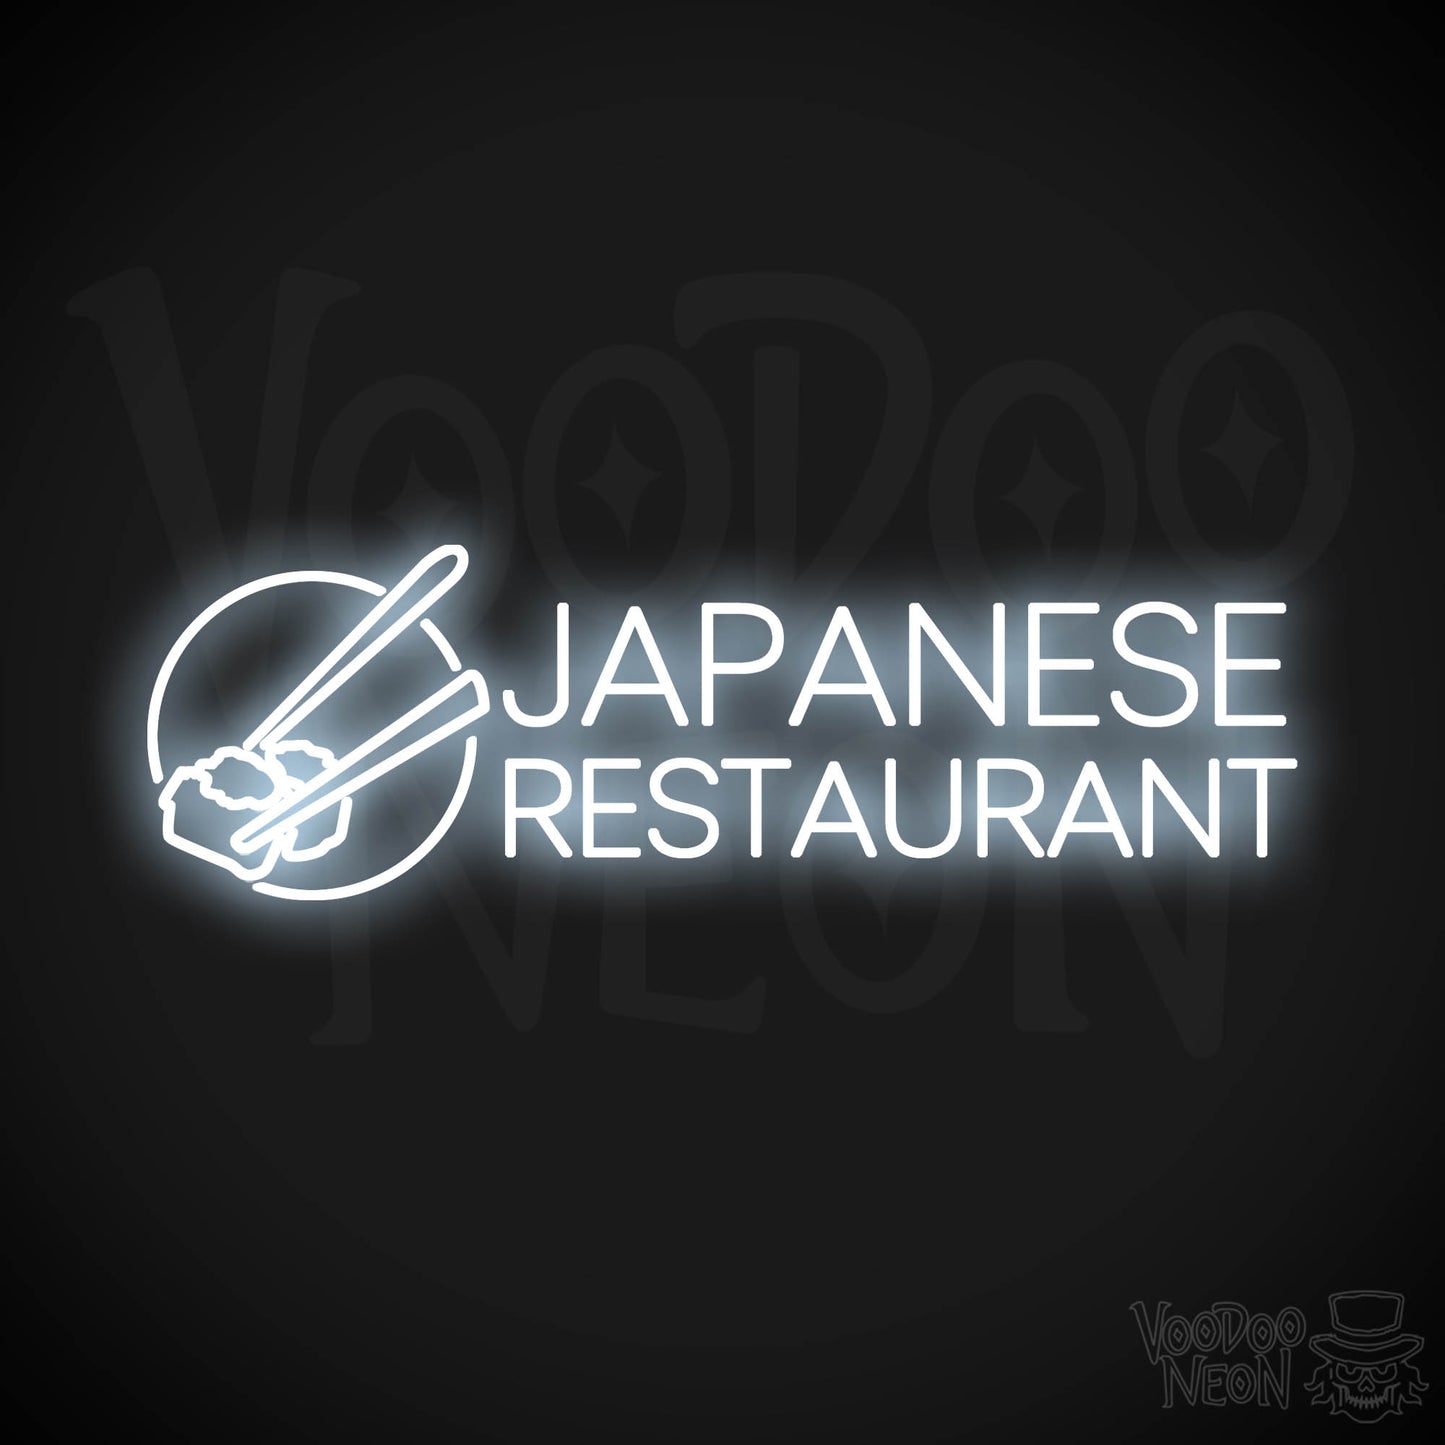 Japanese Restaurant LED Neon - Cool White